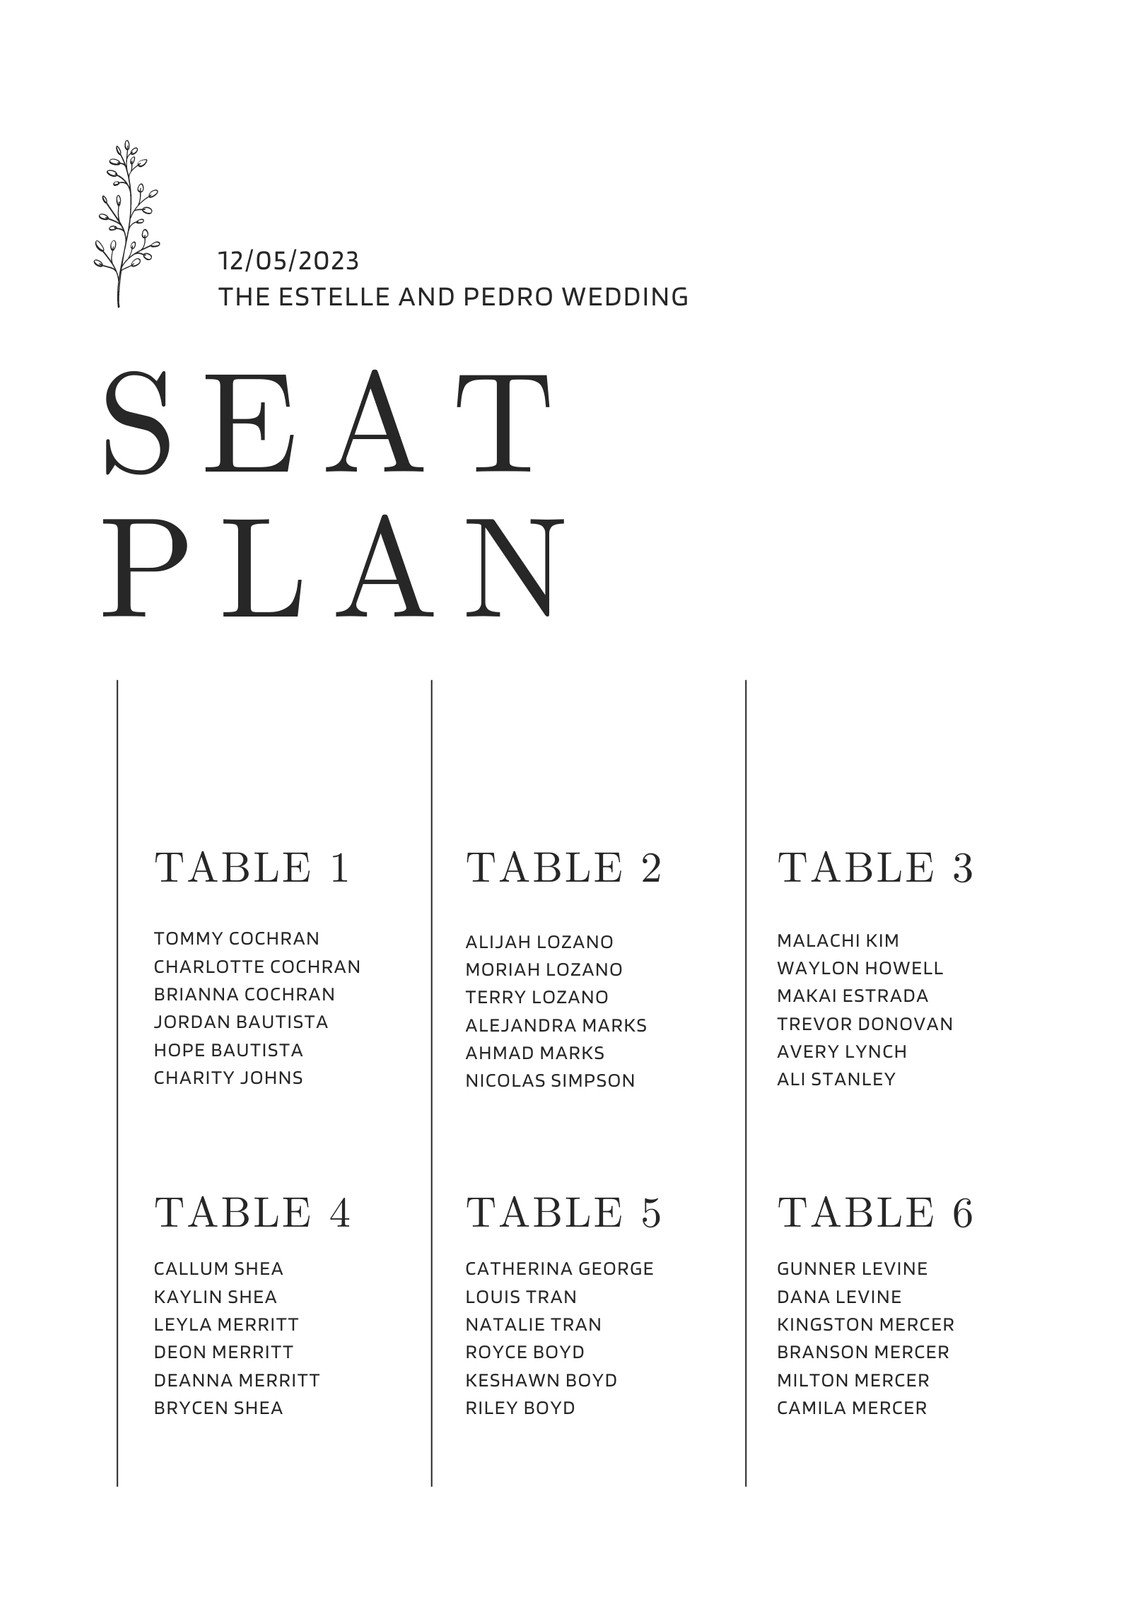 seating diagram template